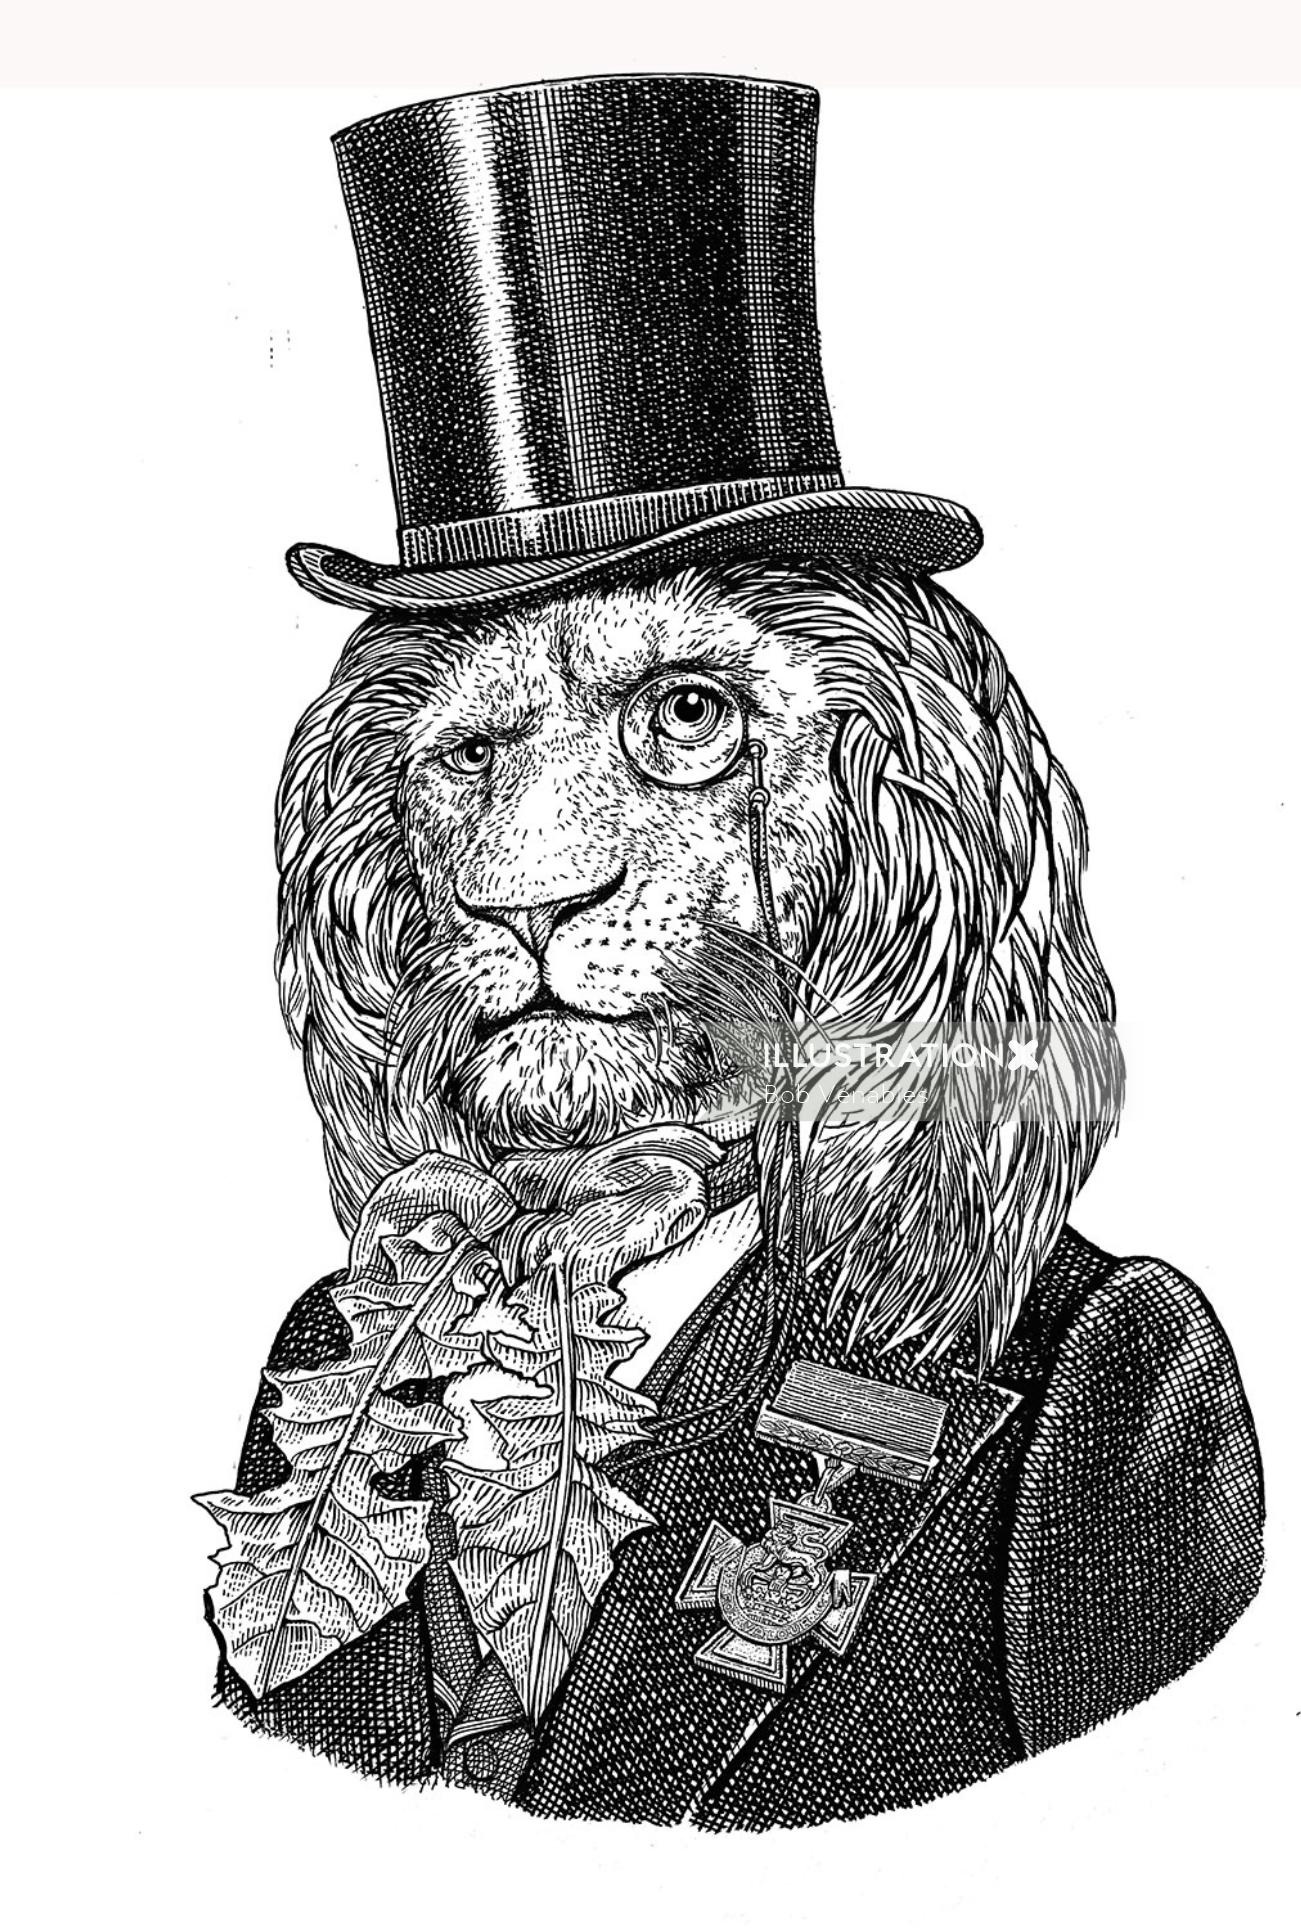 Illustration de Lion anthropomorphe noir et blanc